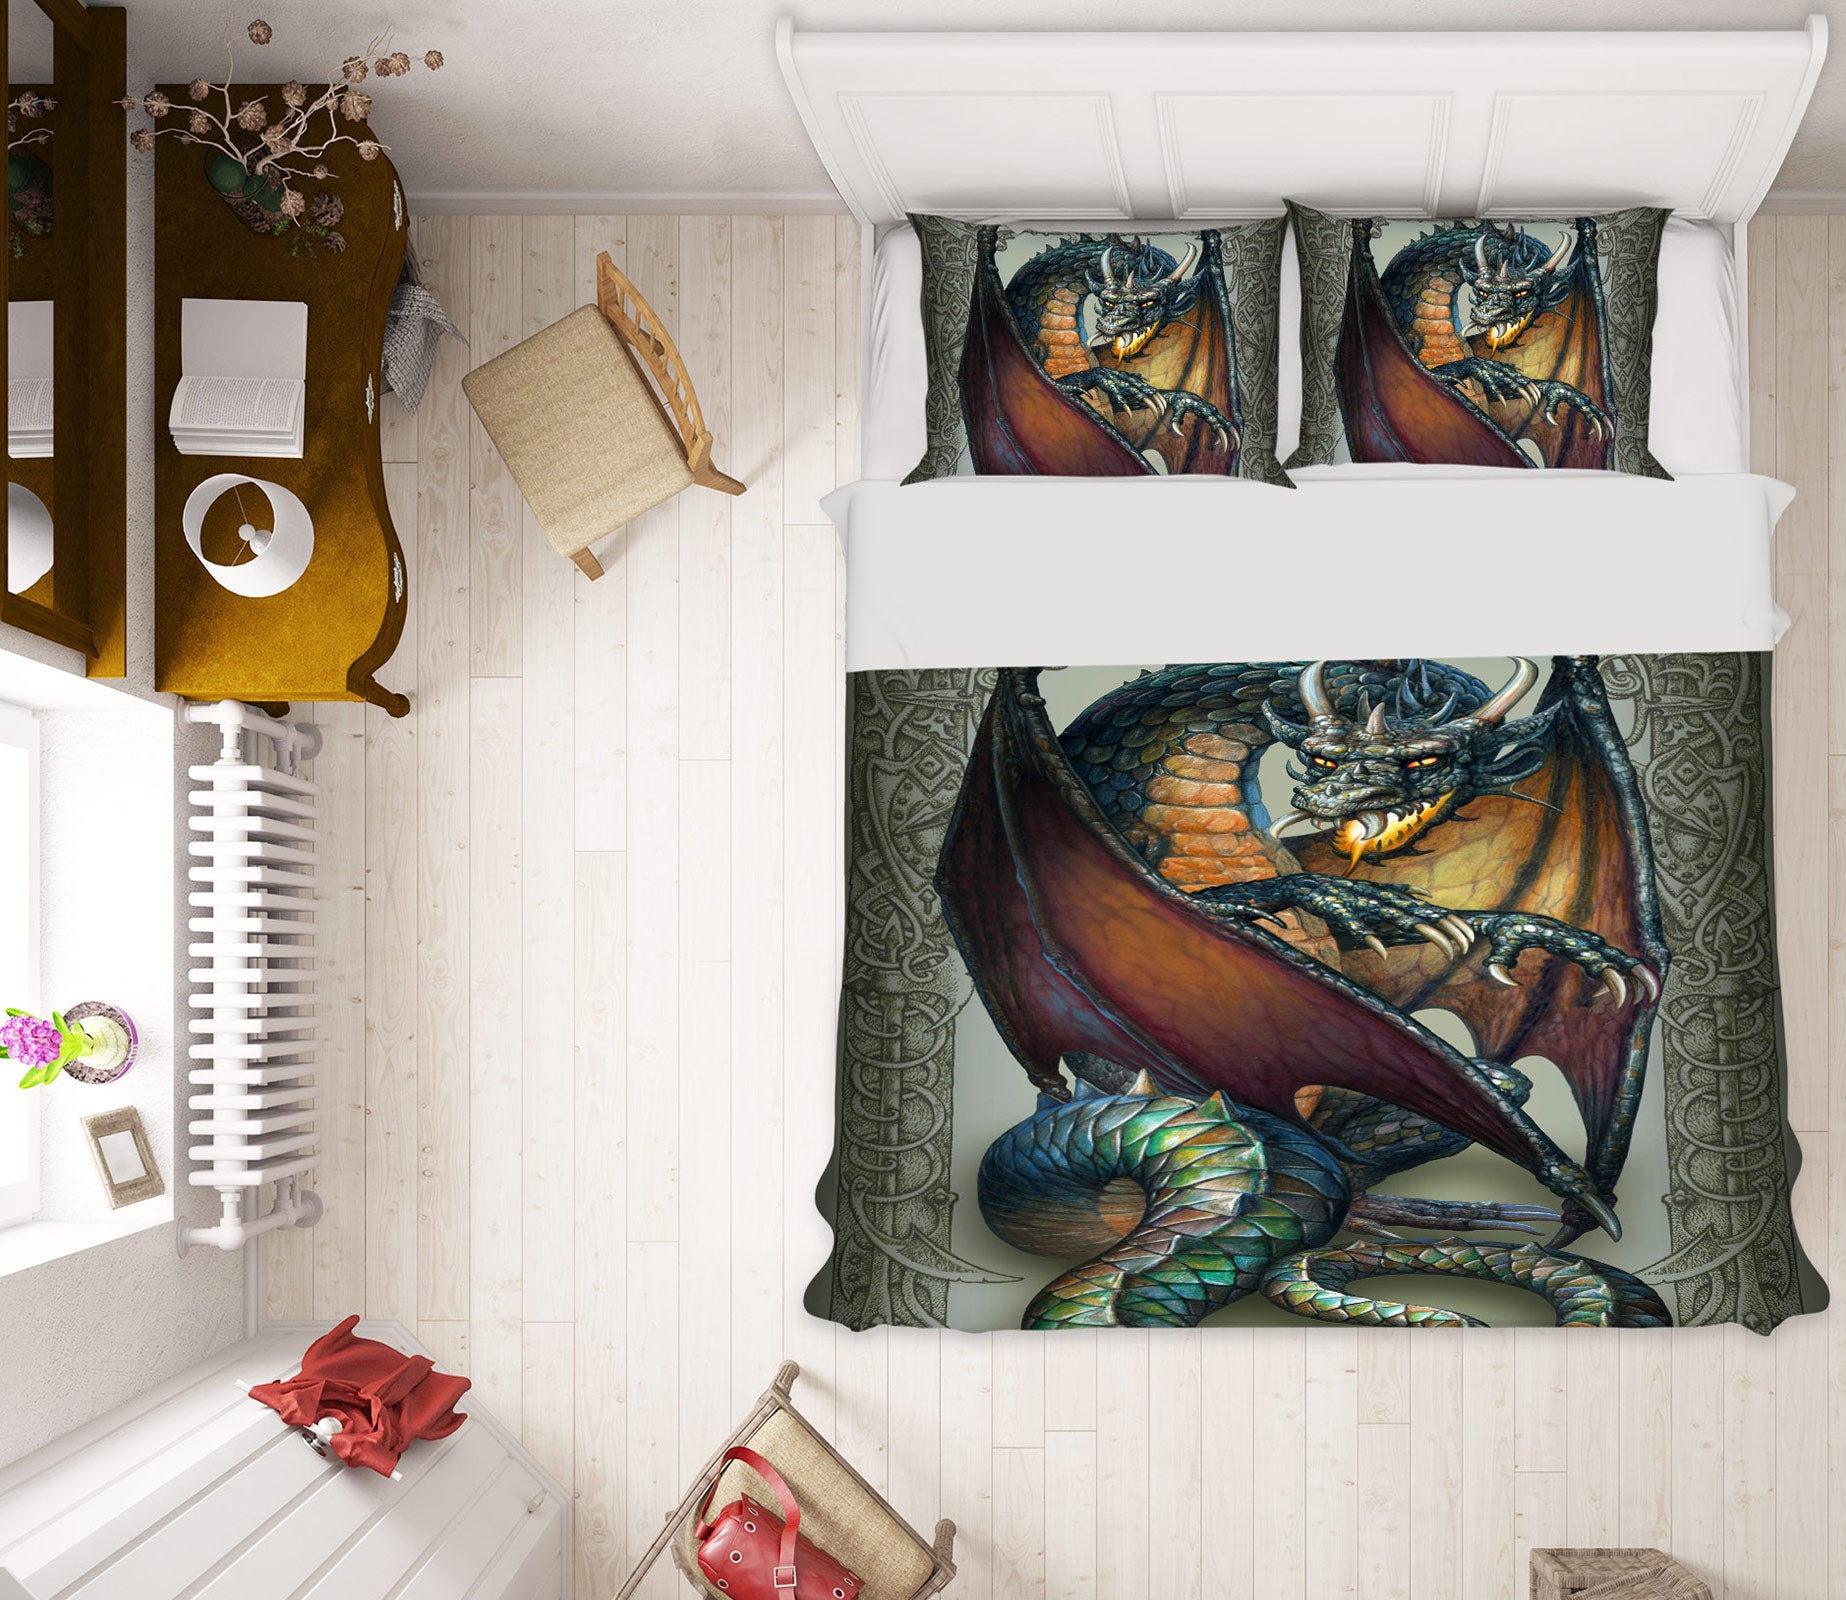 3D Dragon 6170 Ciruelo Bedding Bed Pillowcases Quilt